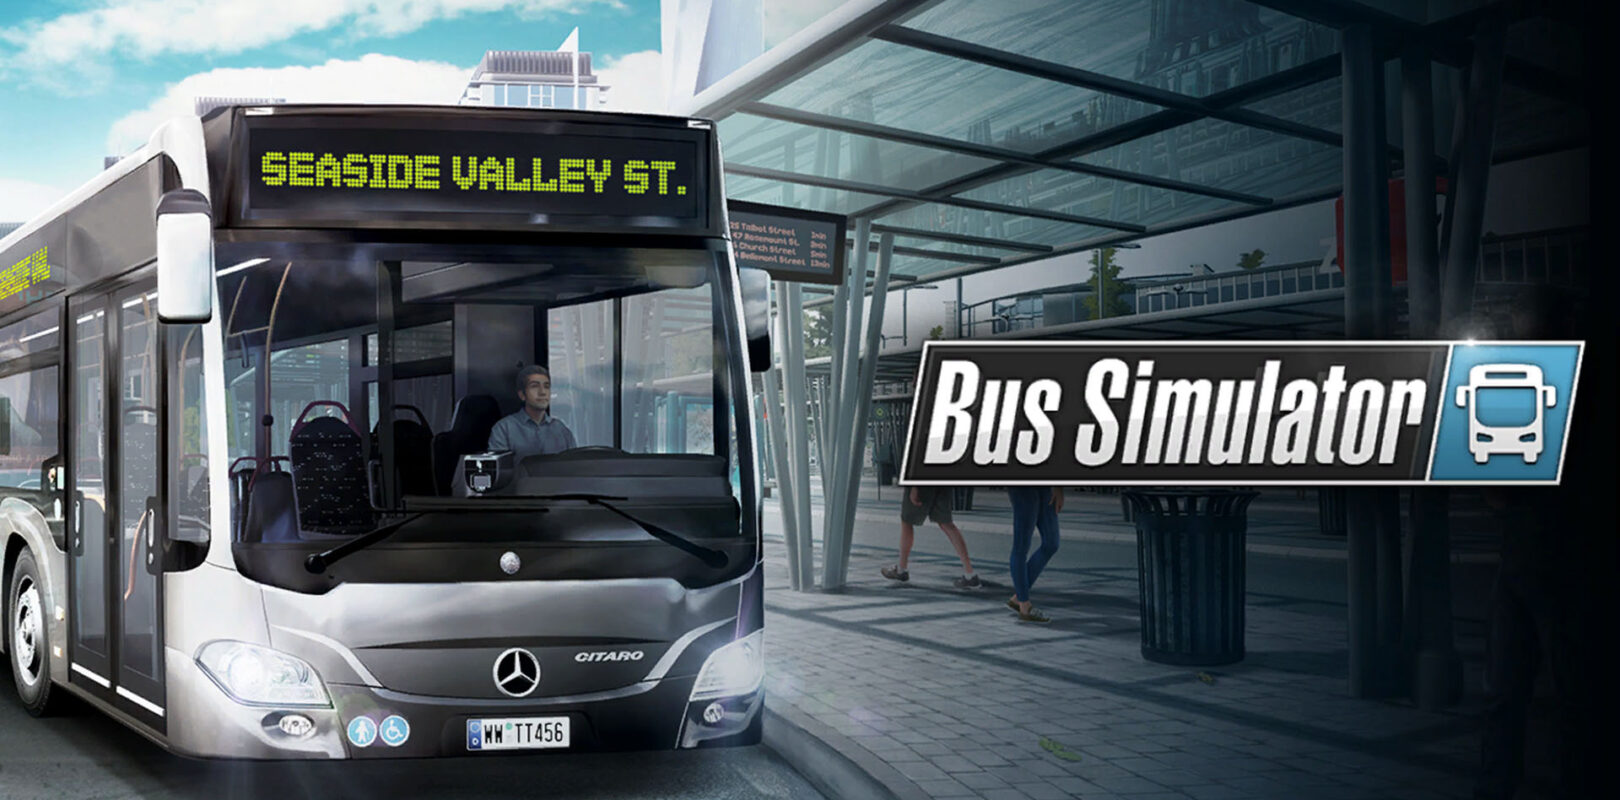 bus simulator games pc